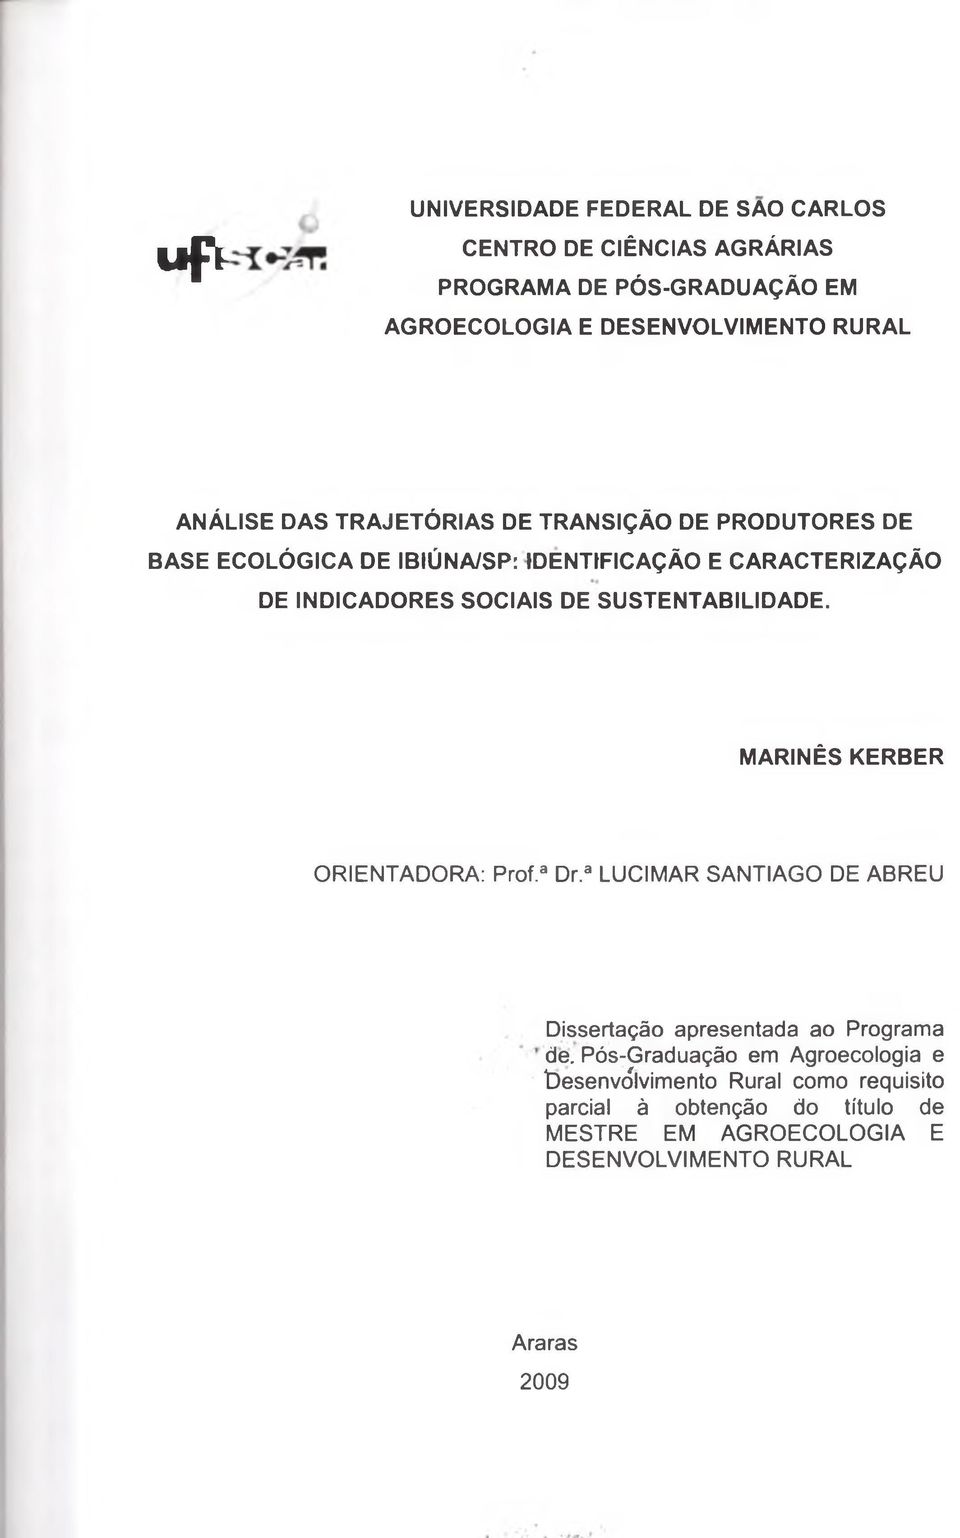 SUSTENTABILIDADE. MARINÊS KERBER ORIENTADORA: Prof.3 Dr.a LUCIMAR SANTIAGO DE ABREU Dissertação apresentada ao Programa de.